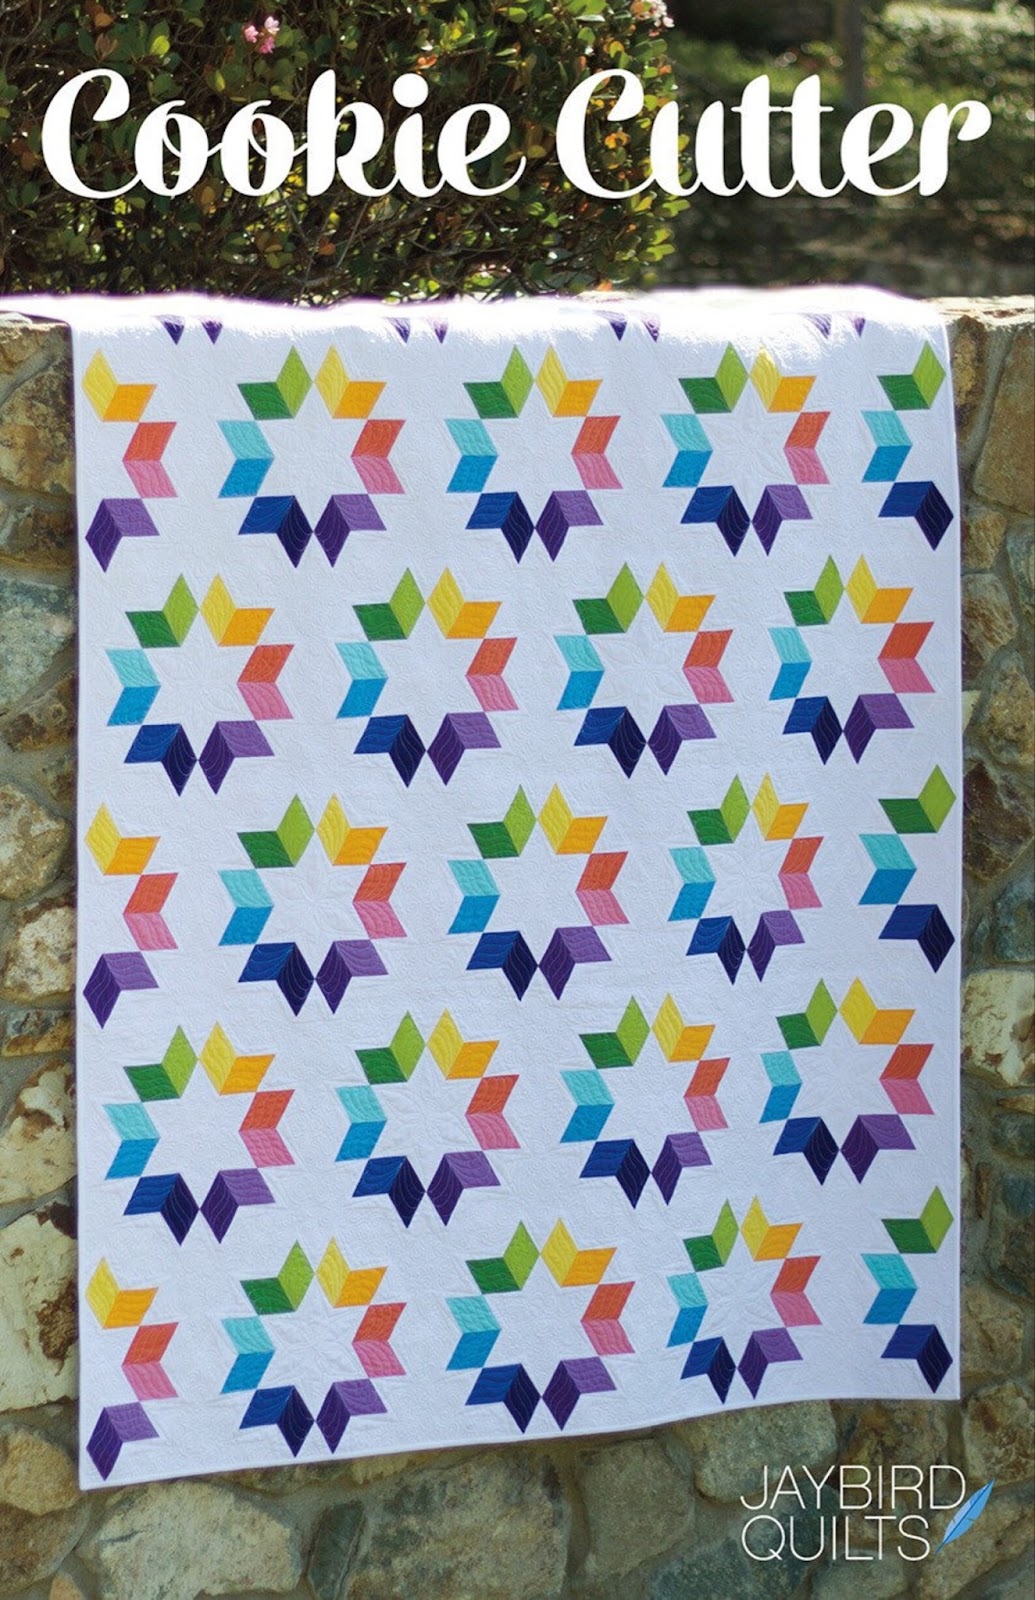 cookie cutter popular jaybird quilt patterns 